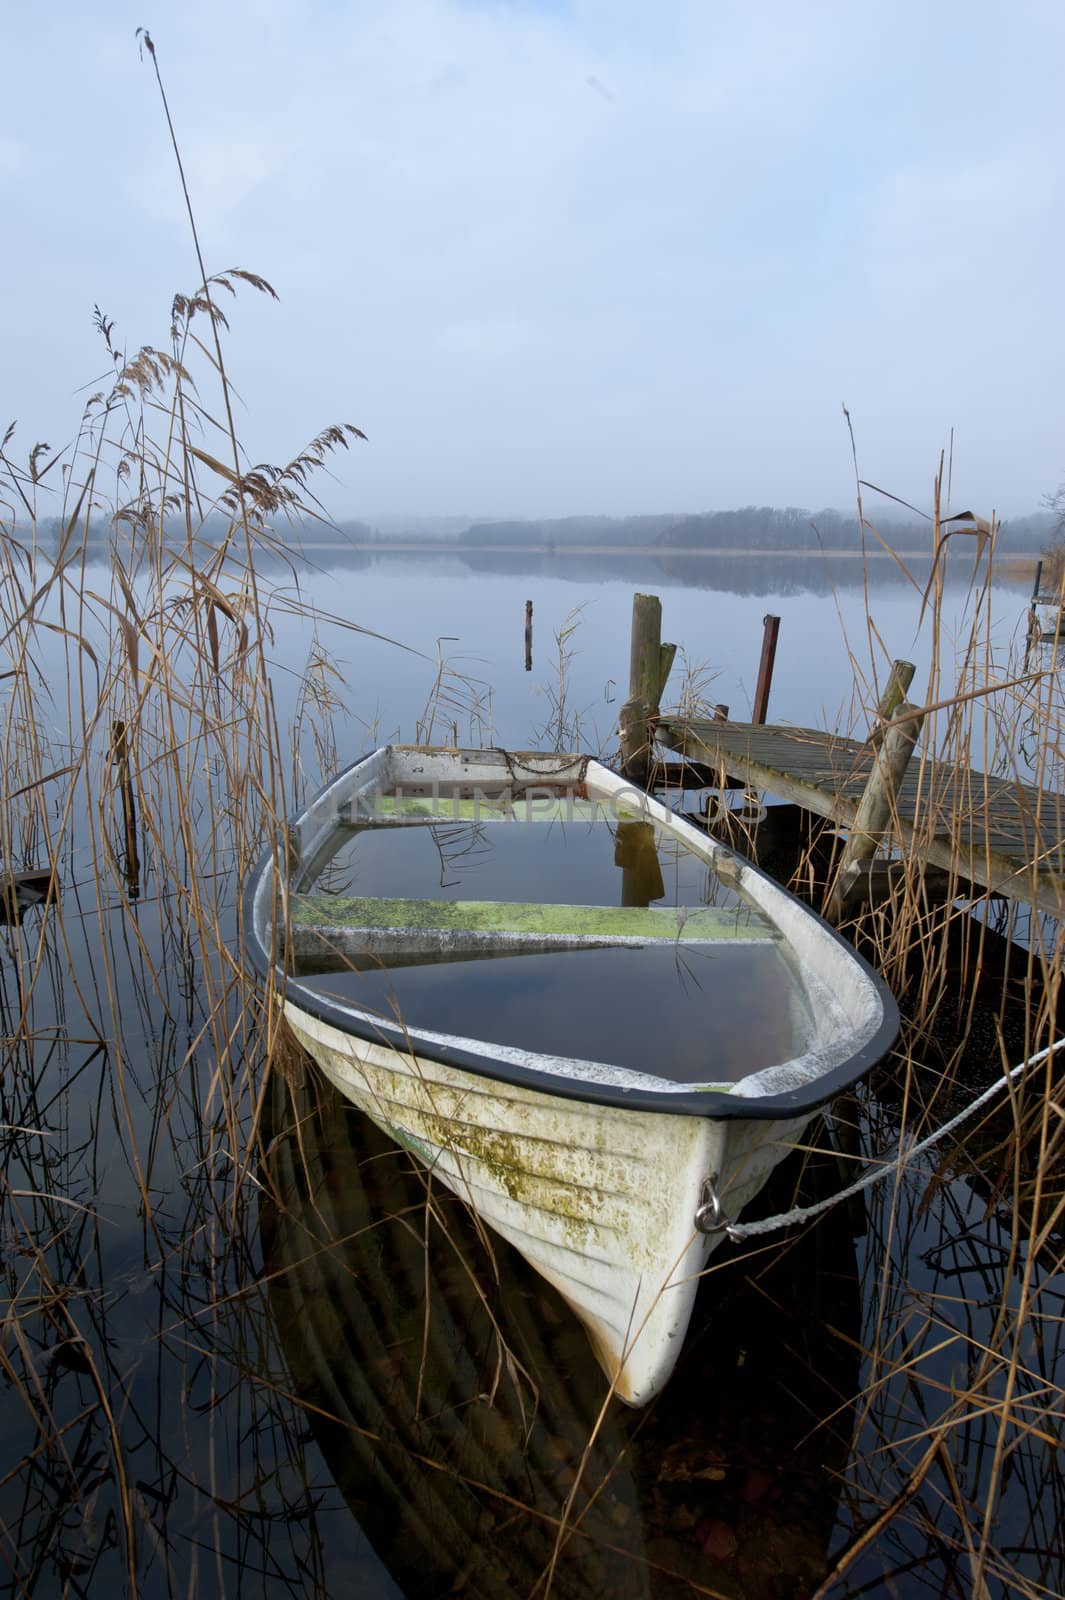 Abandoned boat at lake an misty november morning